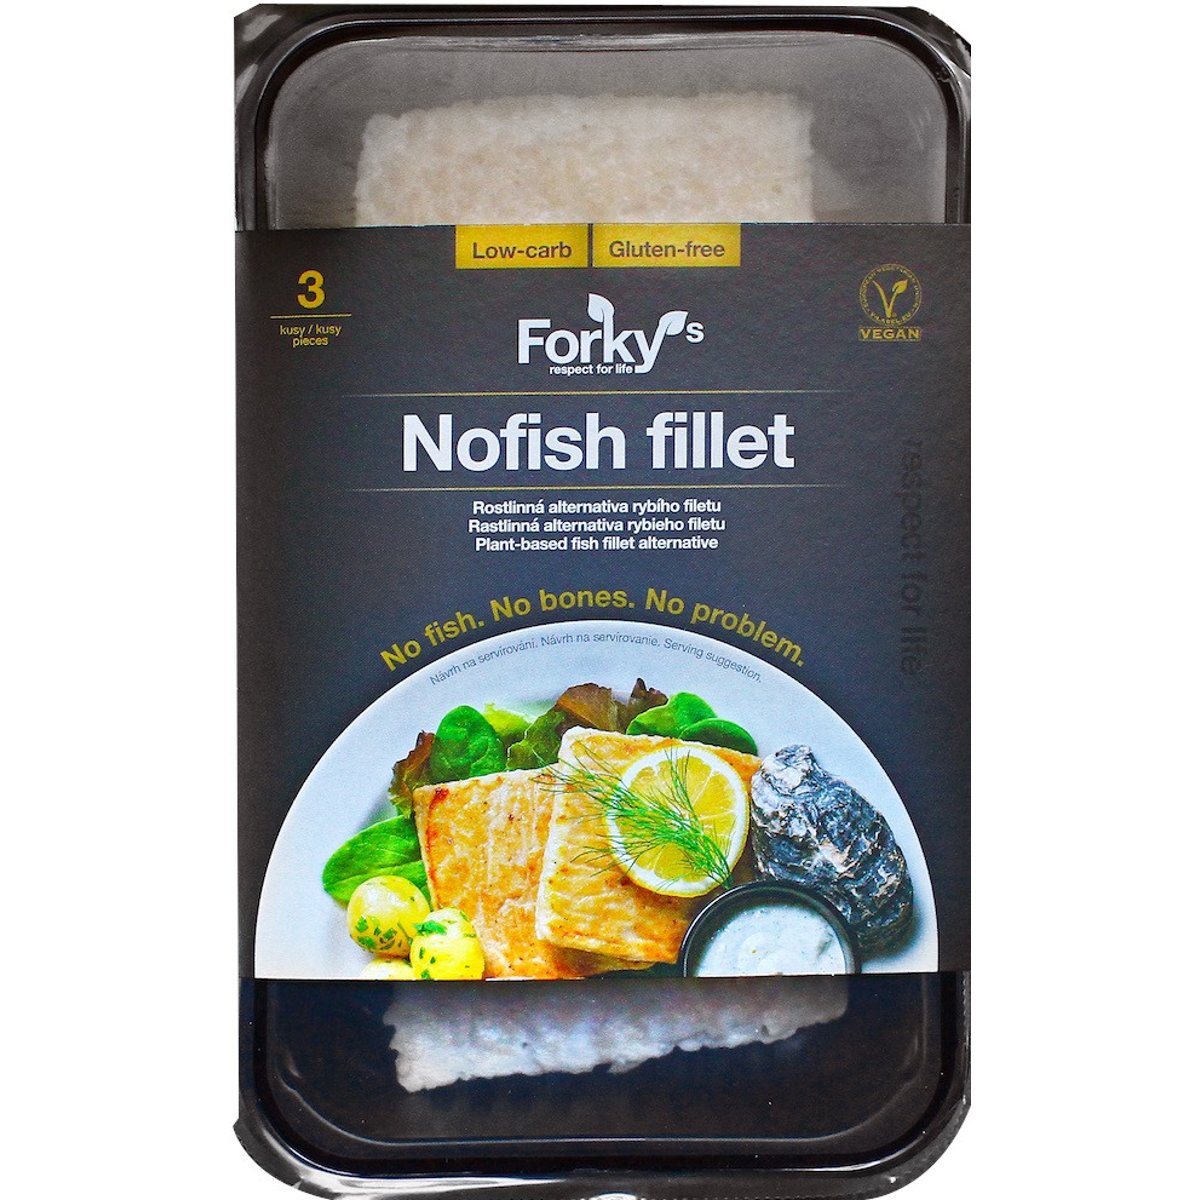 Forky's Nofish fillet